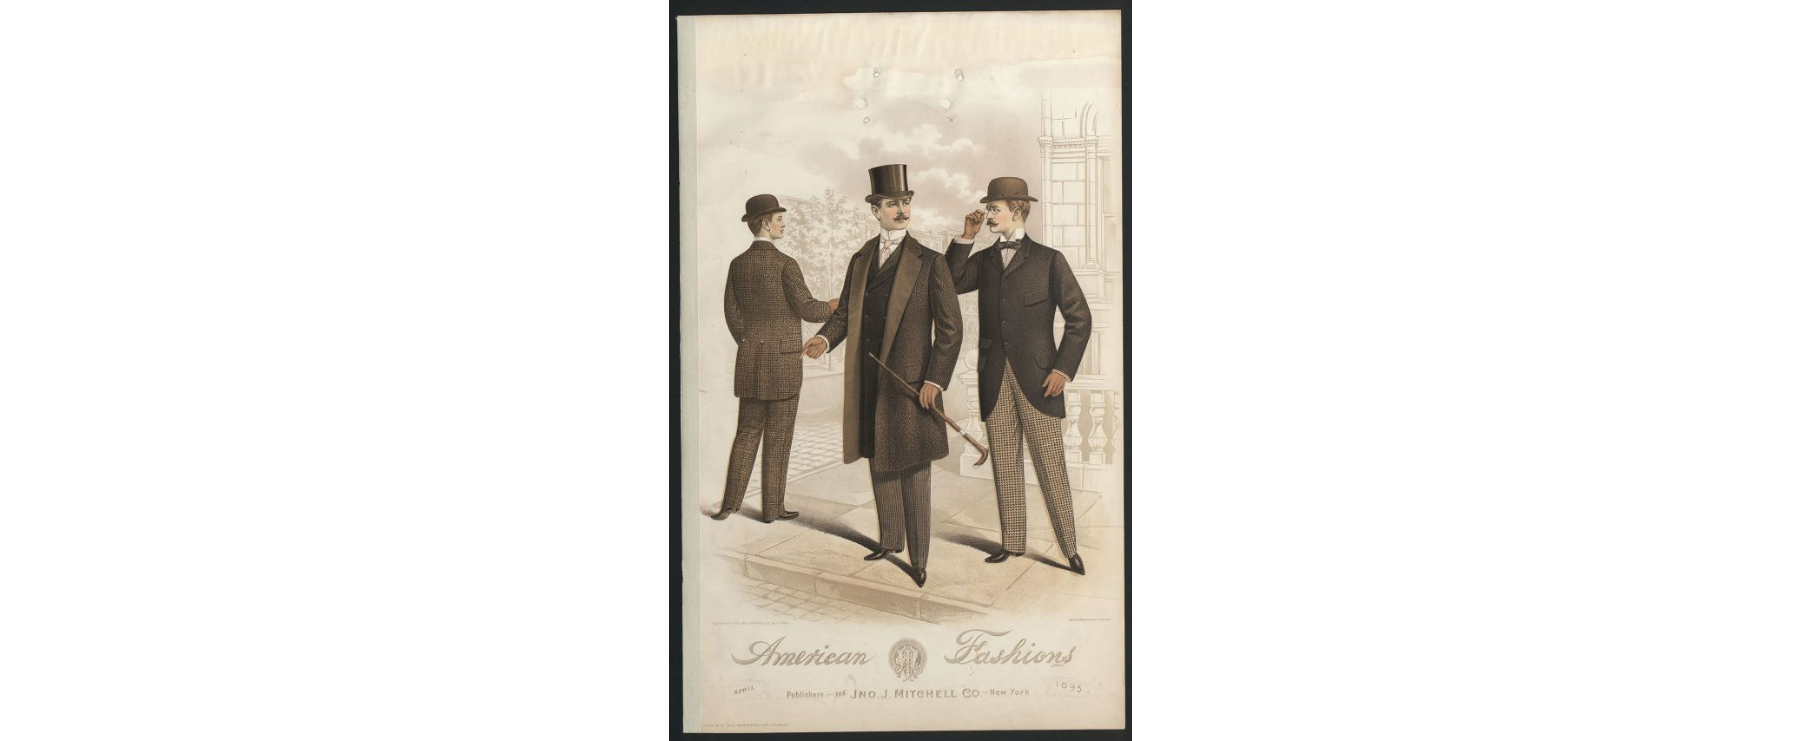 Stroke - Men's Fashion Plate 1895.png